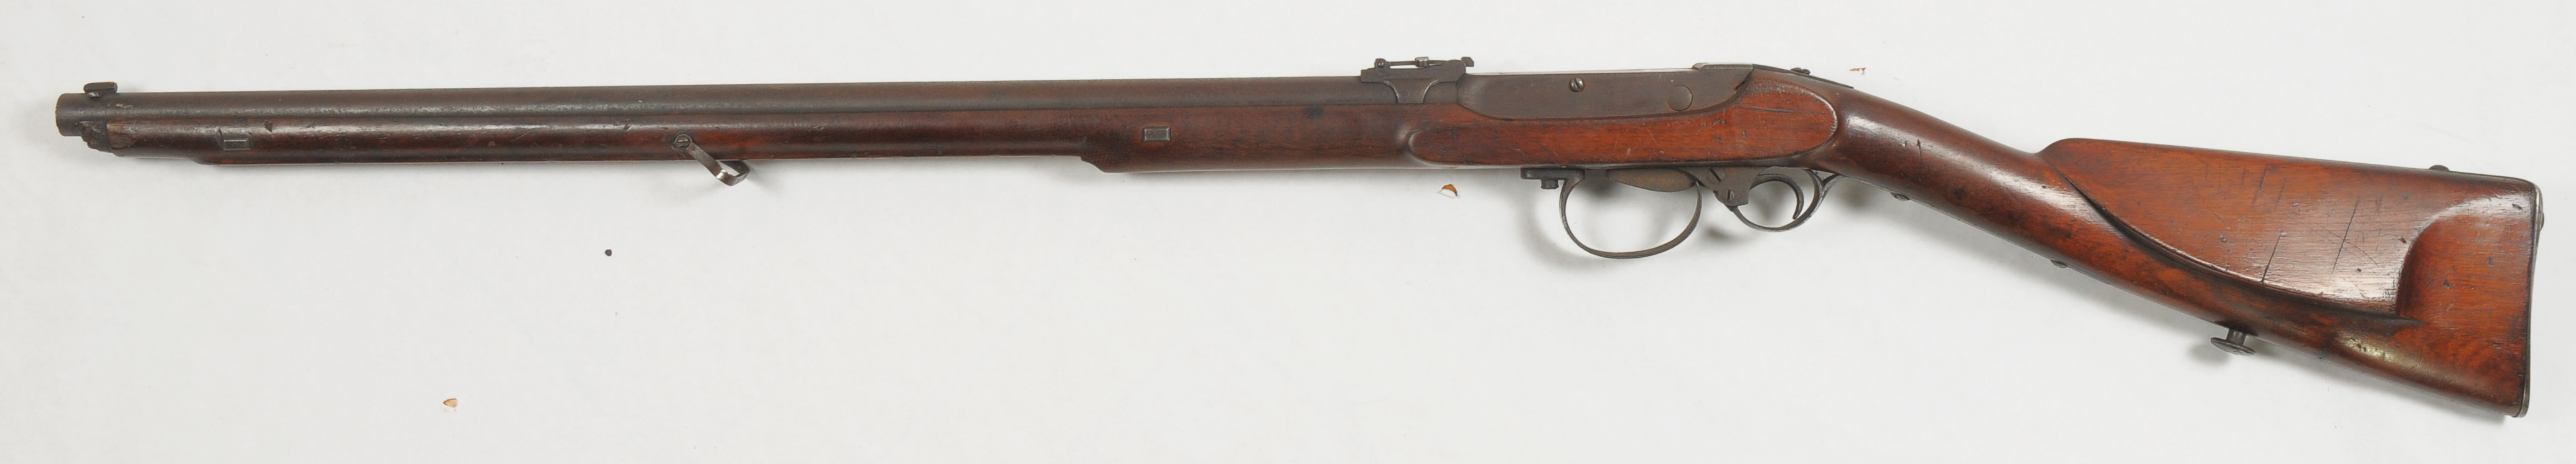 ./guns/rifle/bilder/Rifle-Kongsberg-Kammerlader-1863-1-2.jpg